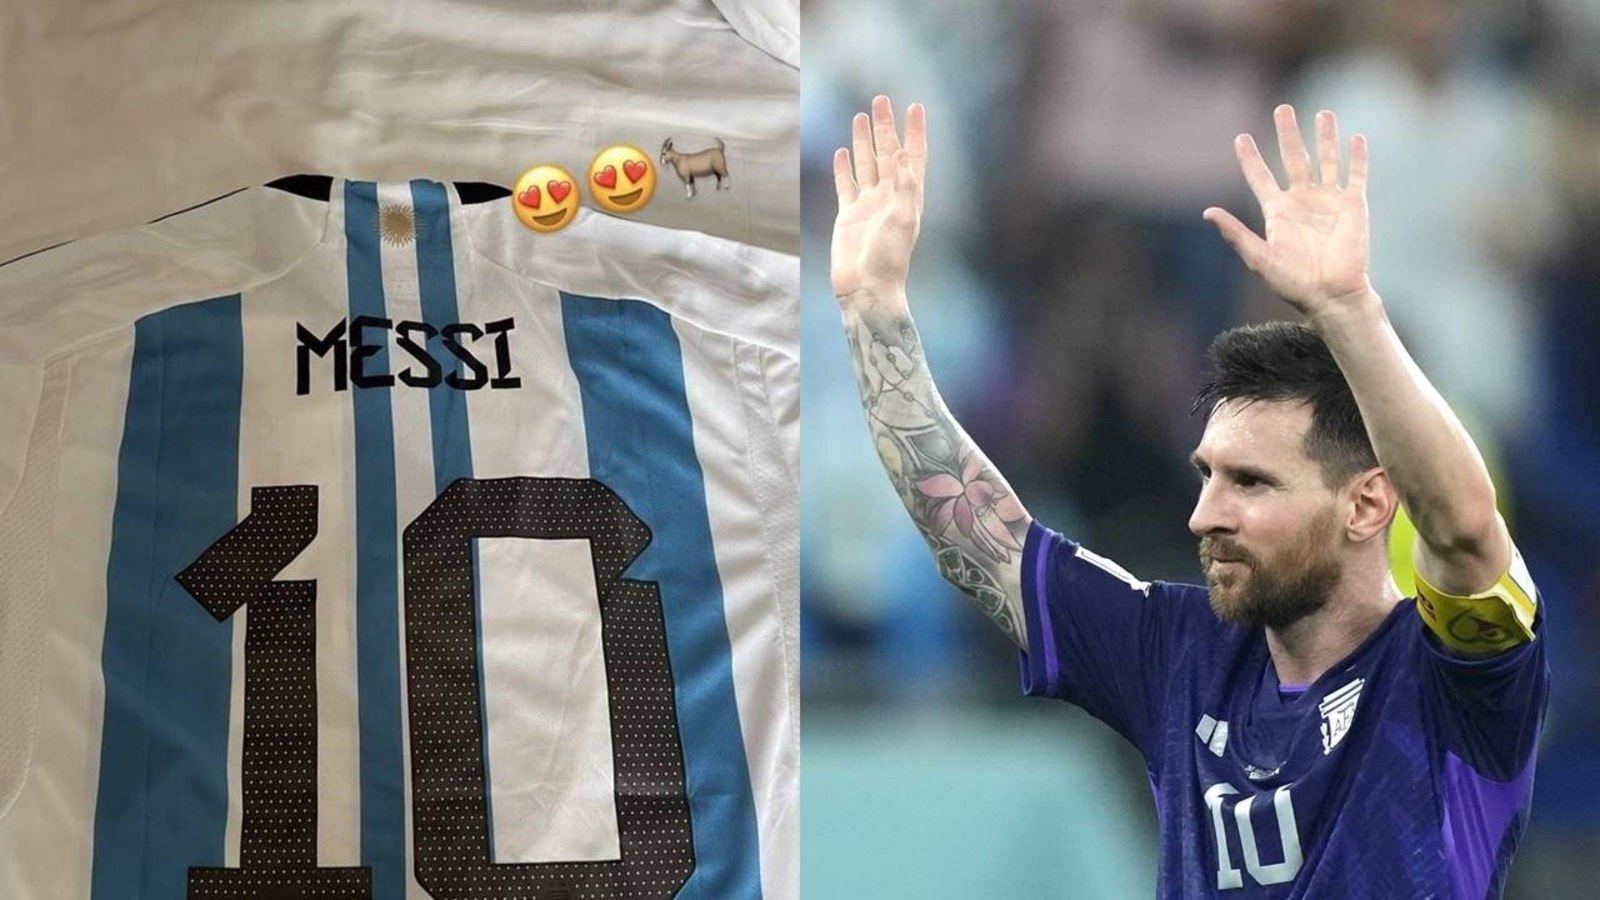 Il le regardait comme : ‘C’est Messi !   » : Défenseur de la Pologne à propos du capitaine ARG